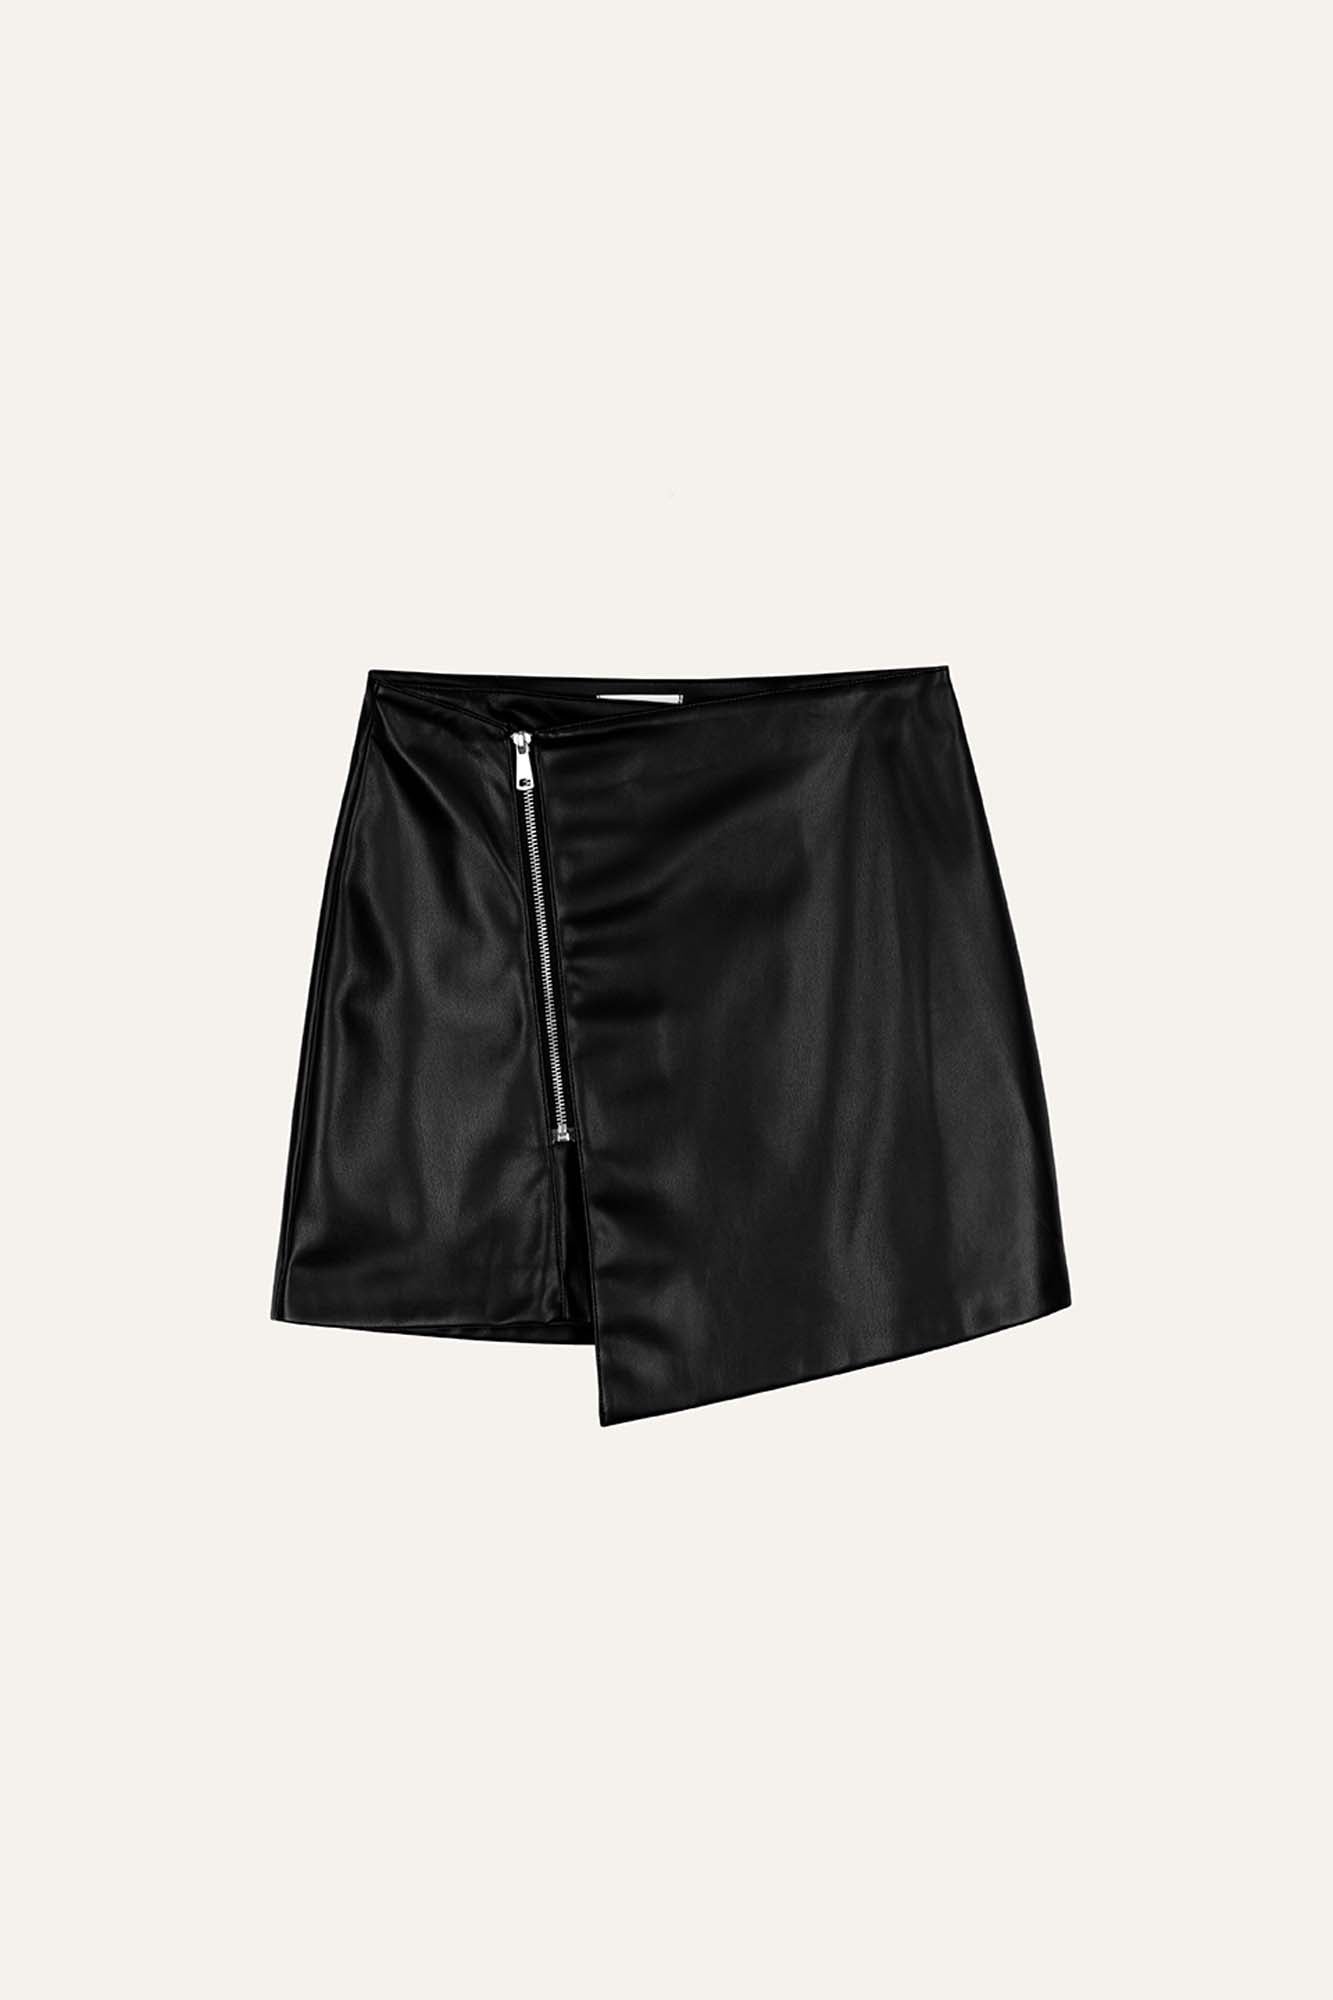 Avie Vegan Leather Mini Skirt Black